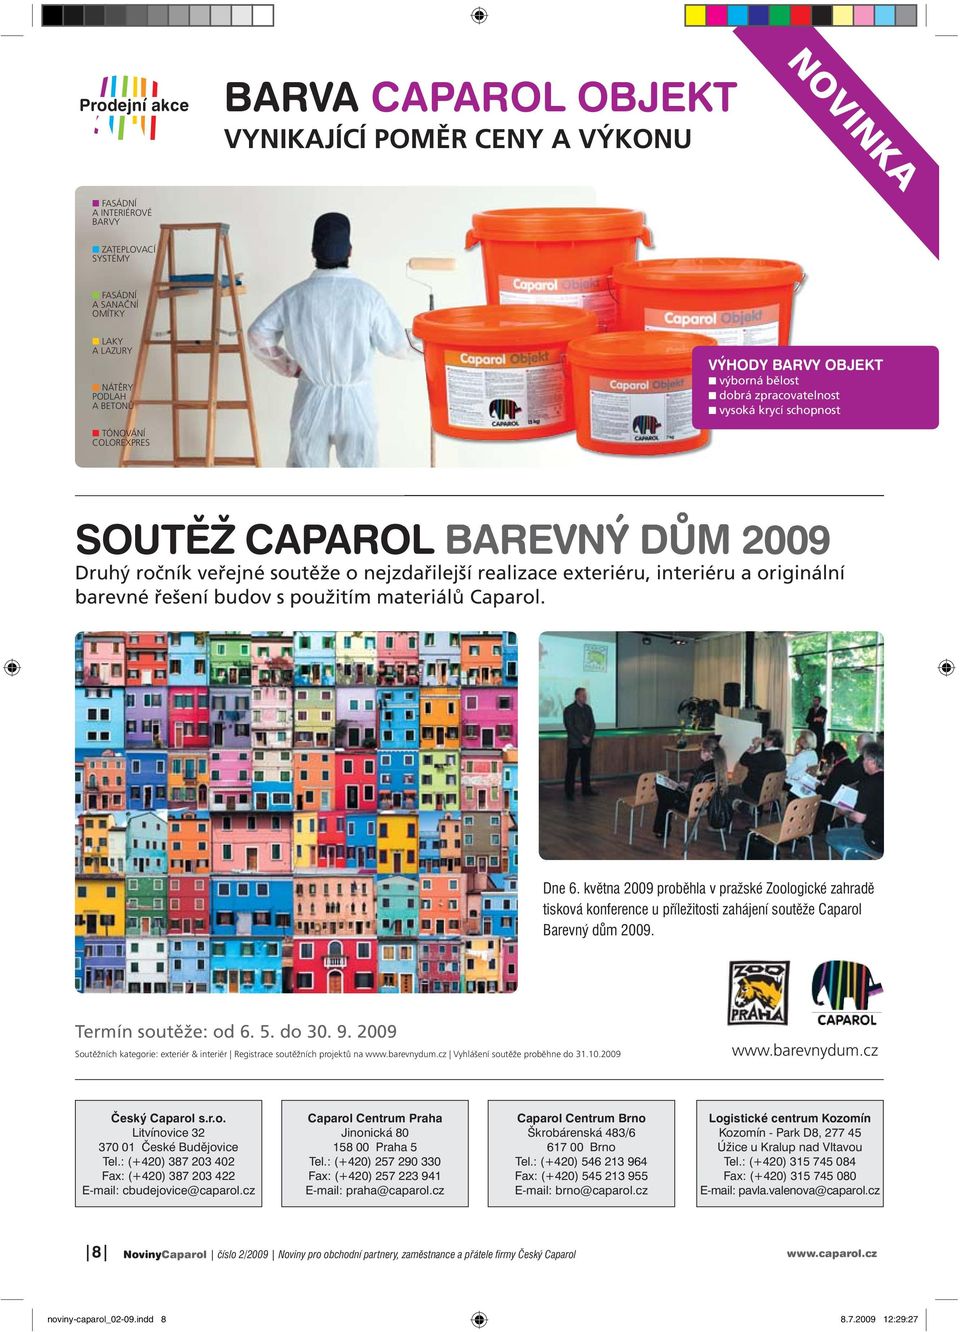 originální barevné řešení budov s použitím materiálů Caparol. Dne 6. května 2009 proběhla v pražské Zoologické zahradě tisková konference u příležitosti zahájení soutěže Caparol Barevný dům 2009.